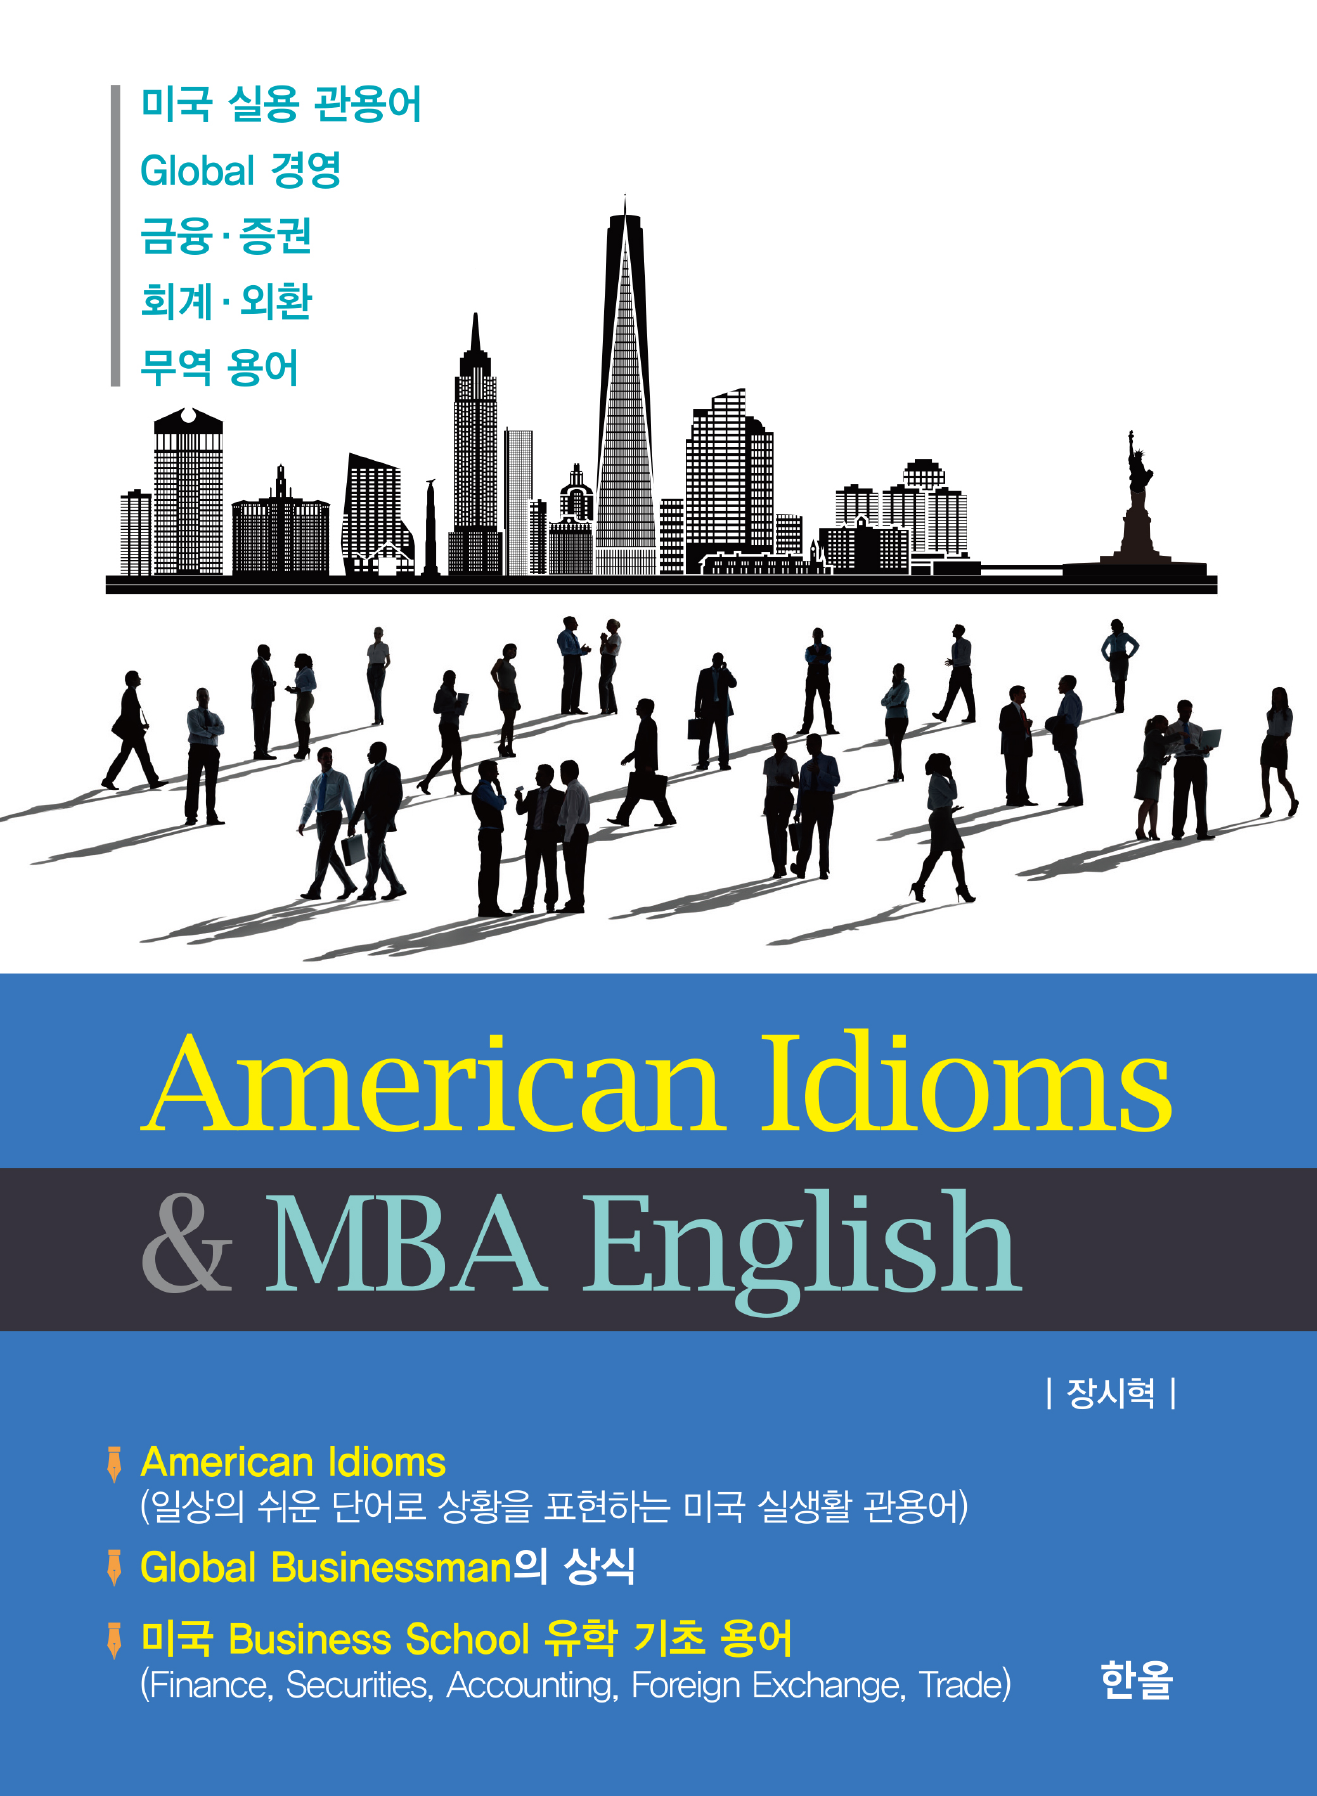 American Idioms & MBA English